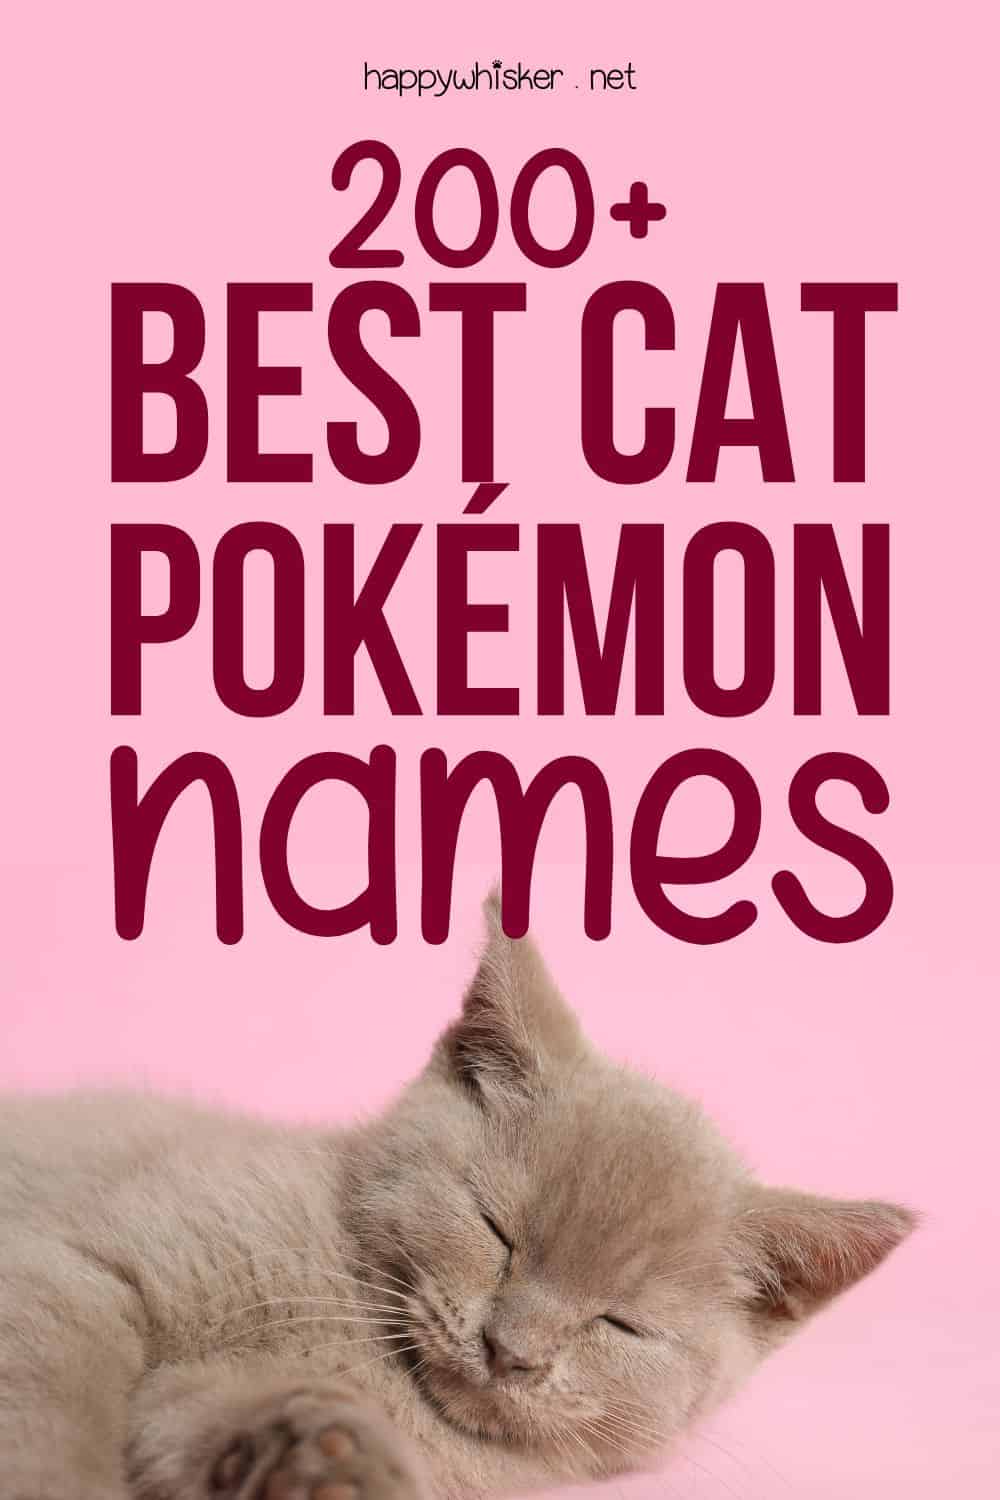 200+ Best Cat Pokémon Names Pinterest